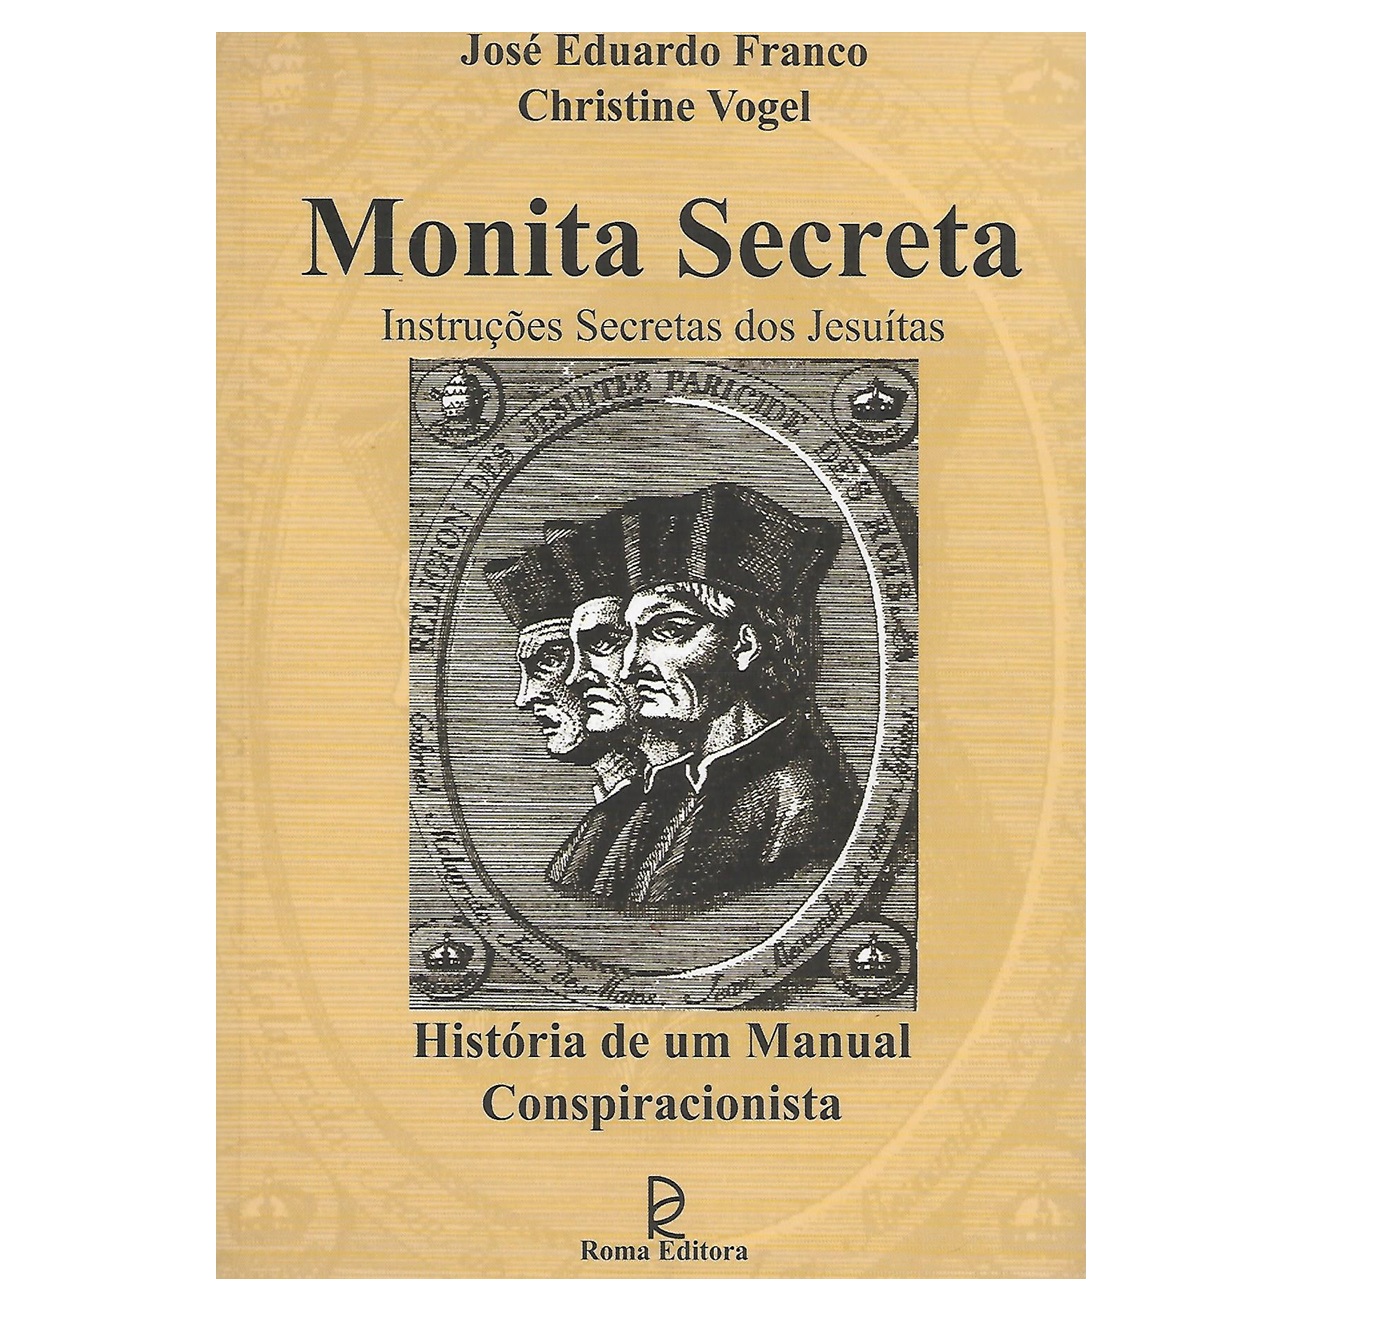 MONITA SECRETA. Instruções Secretas dos Jesuítas